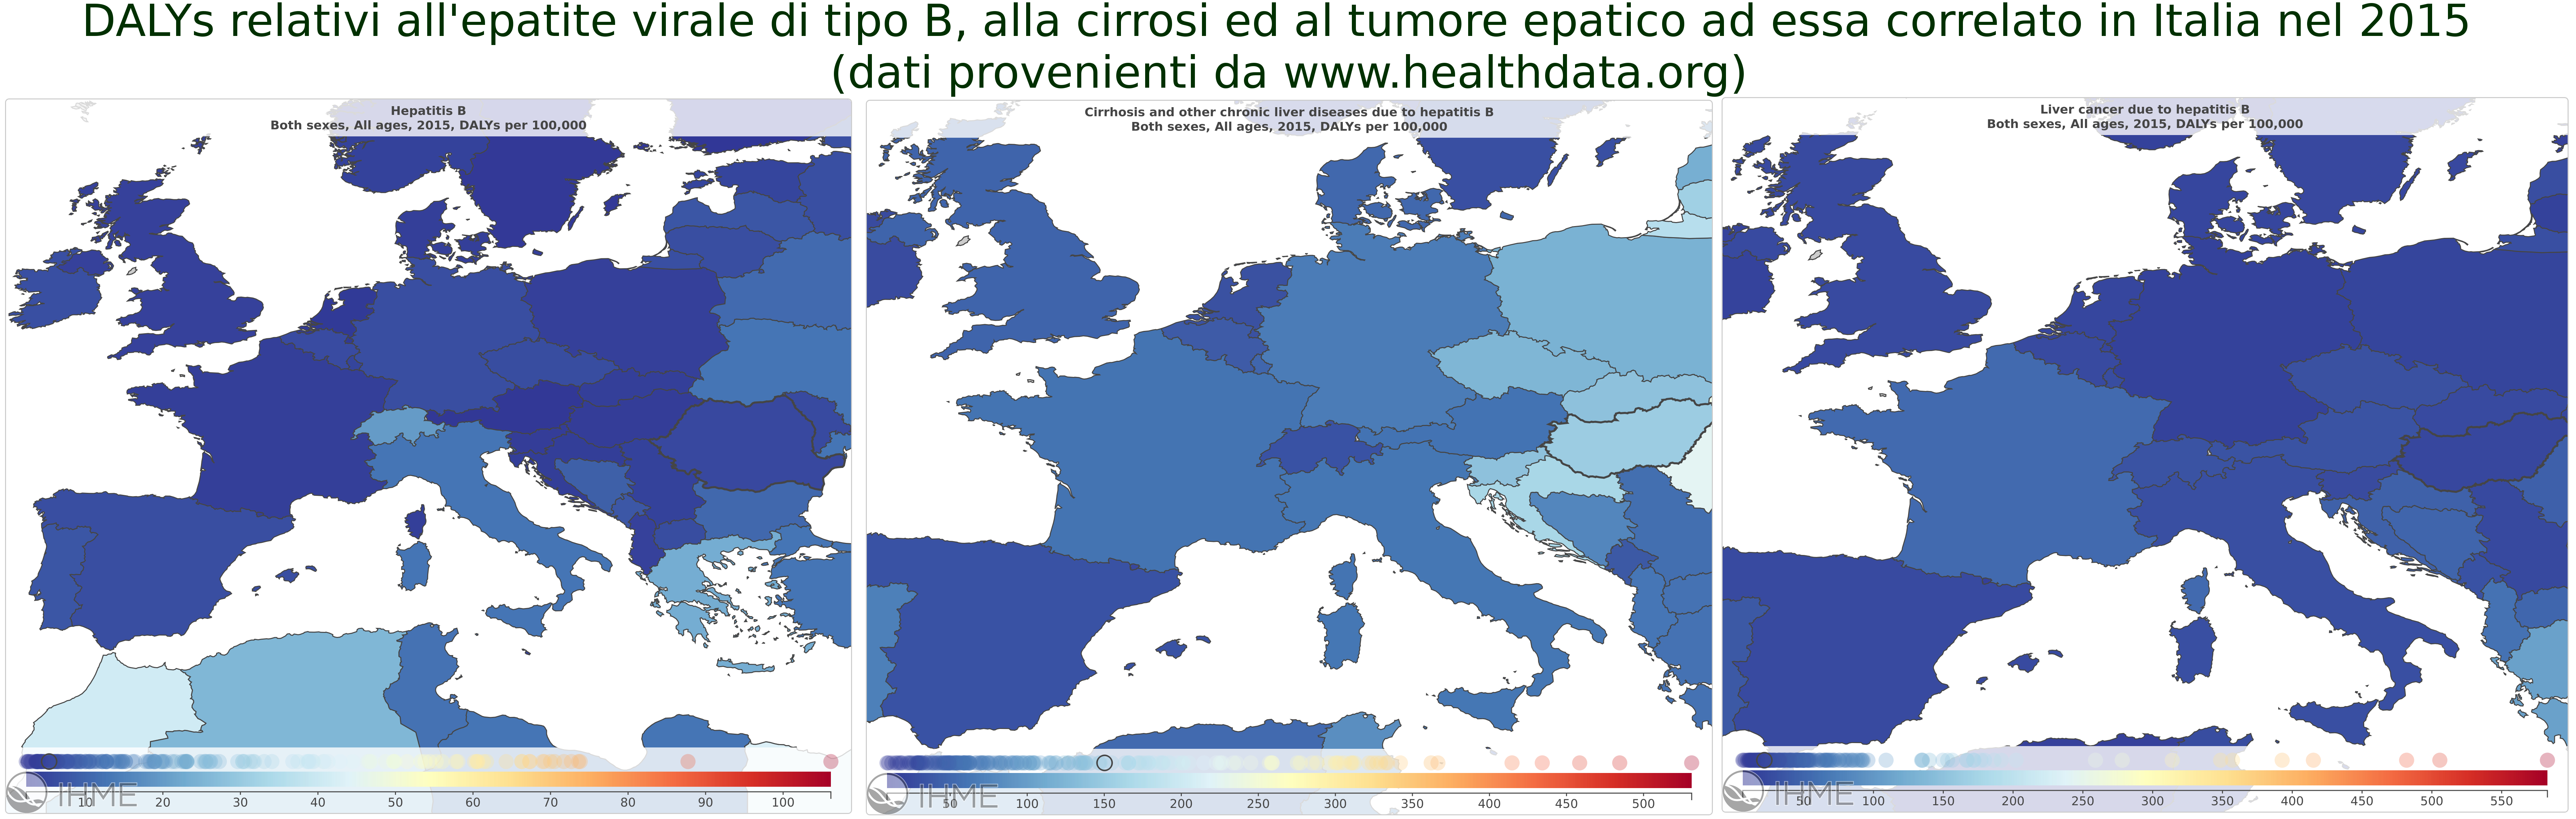 Dati epatite B in Italia 2015